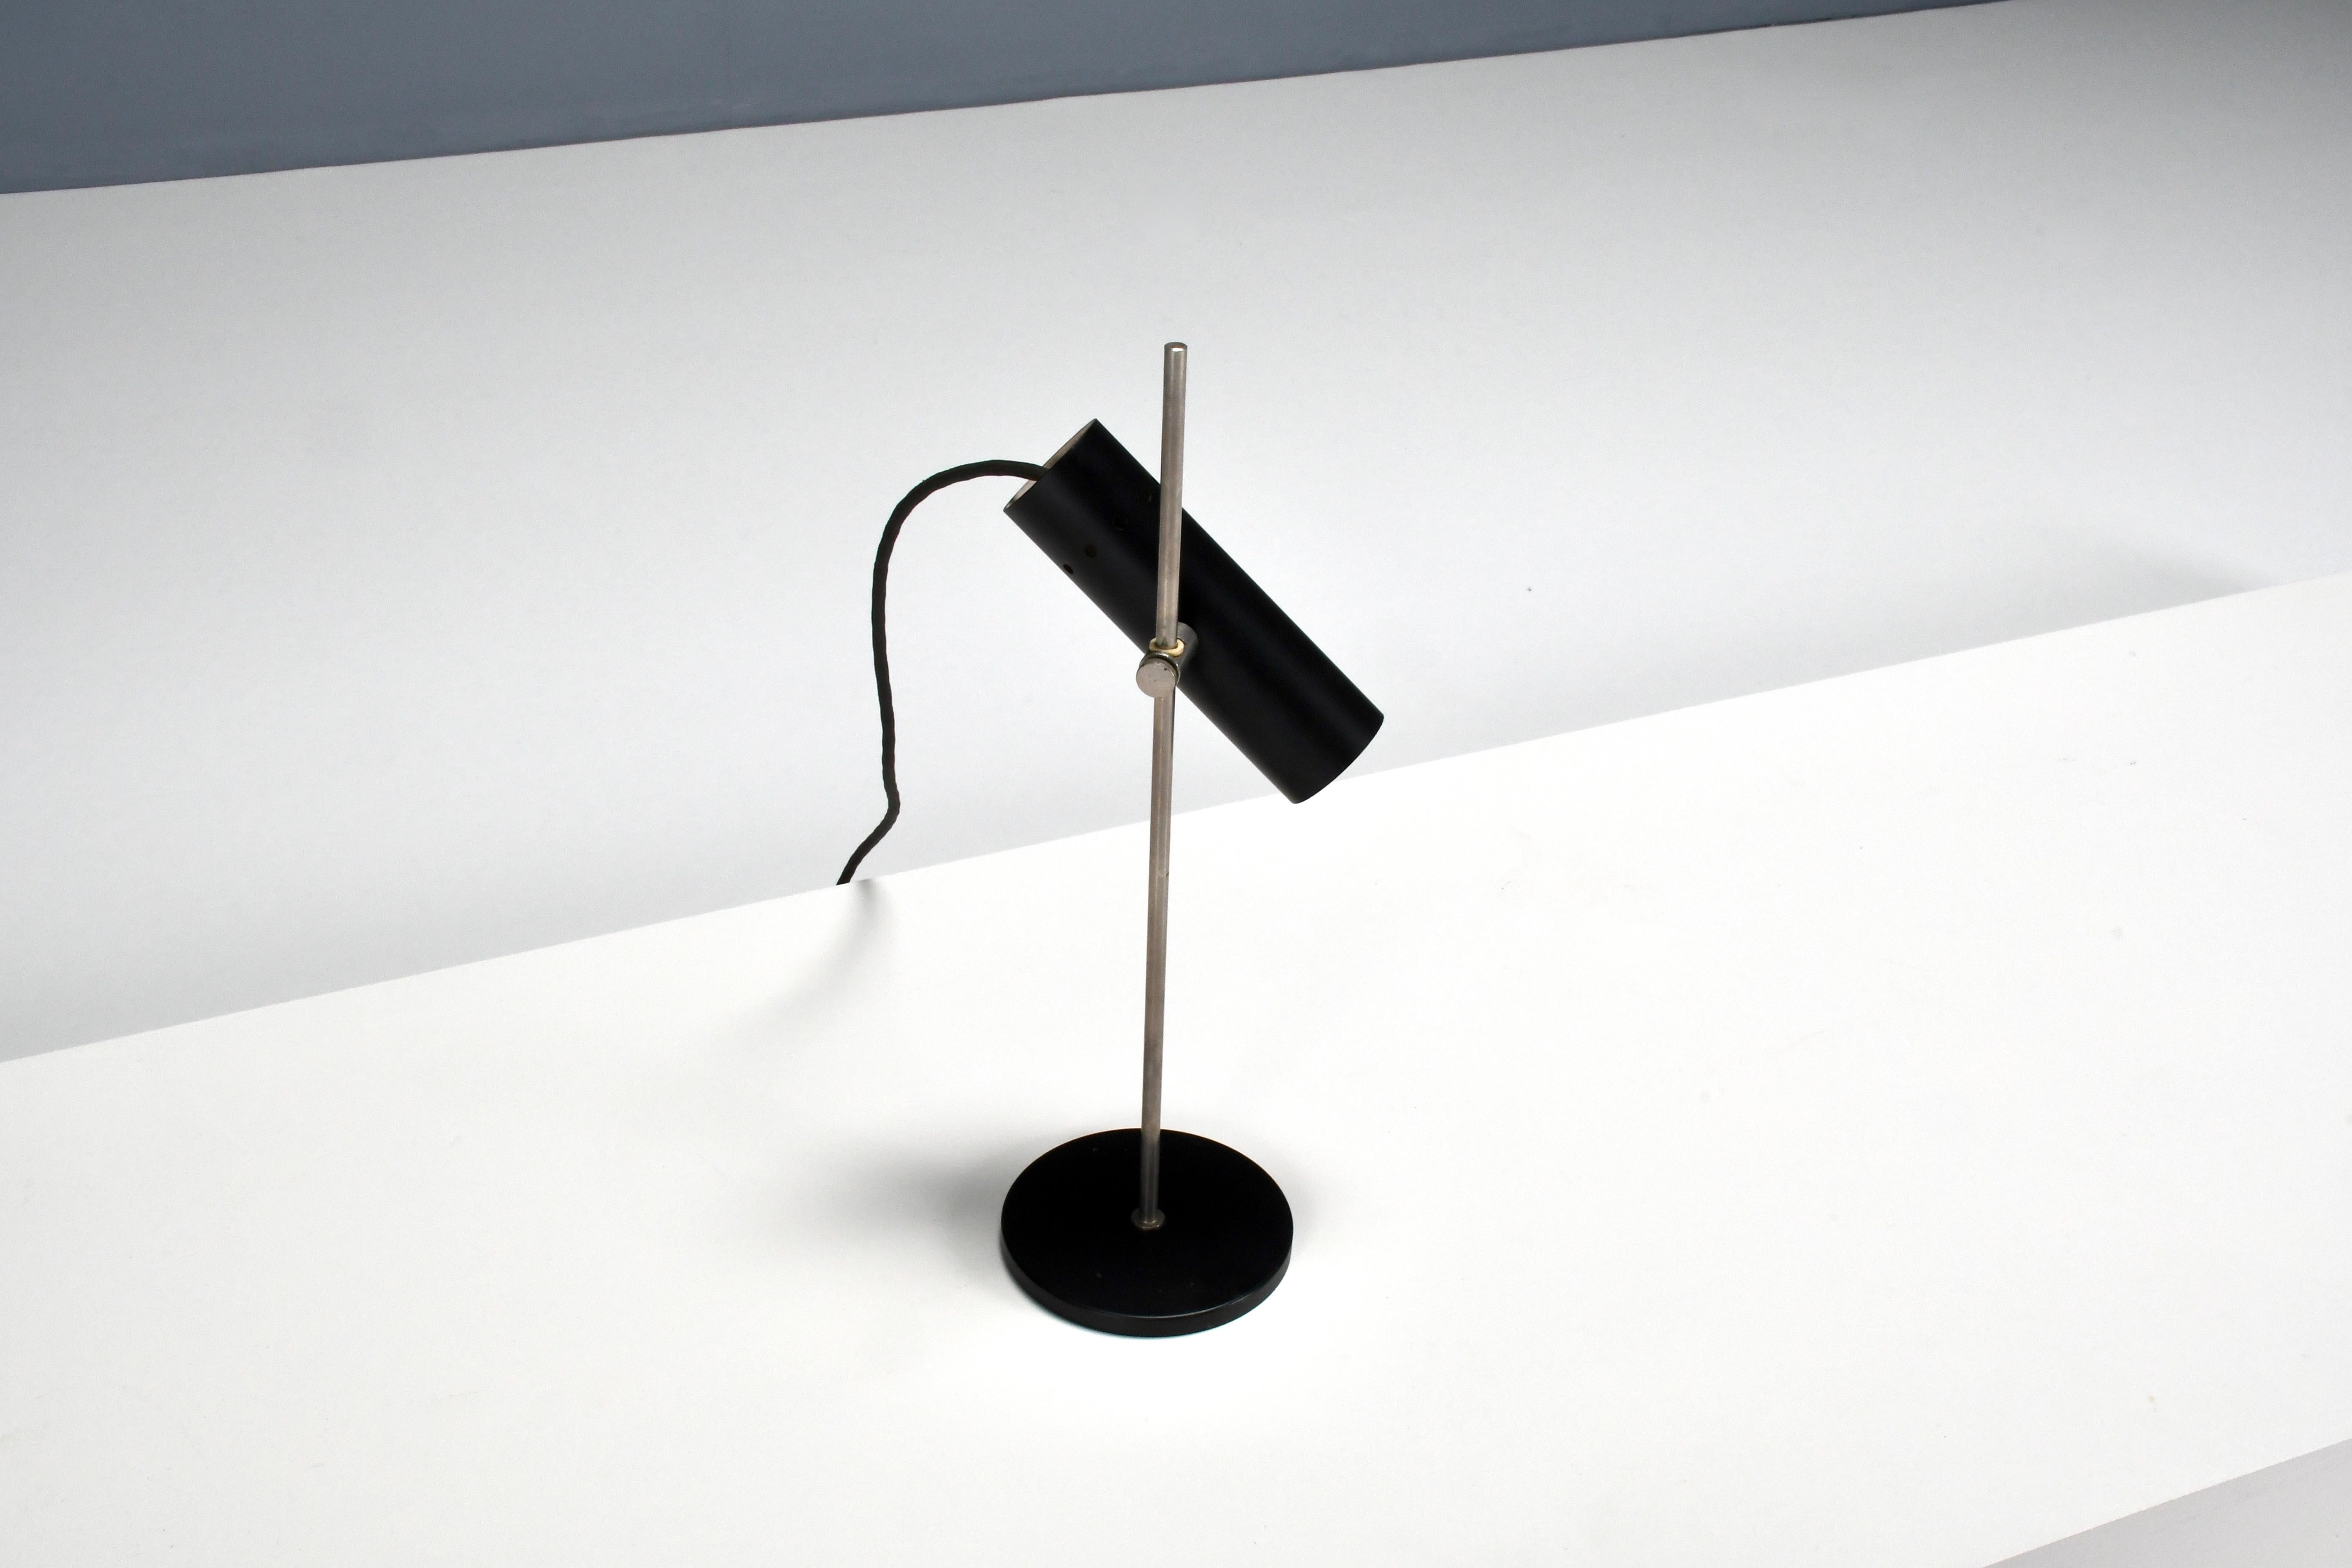 Lampe de table française minimaliste et compacte en bon état. 

Conçu par Alain Richard dans les années 1950 

Fabriqué par Disderot

La lampe a une base en métal laqué noir qui supporte une tige chromée.

La tige est reliée à une structure